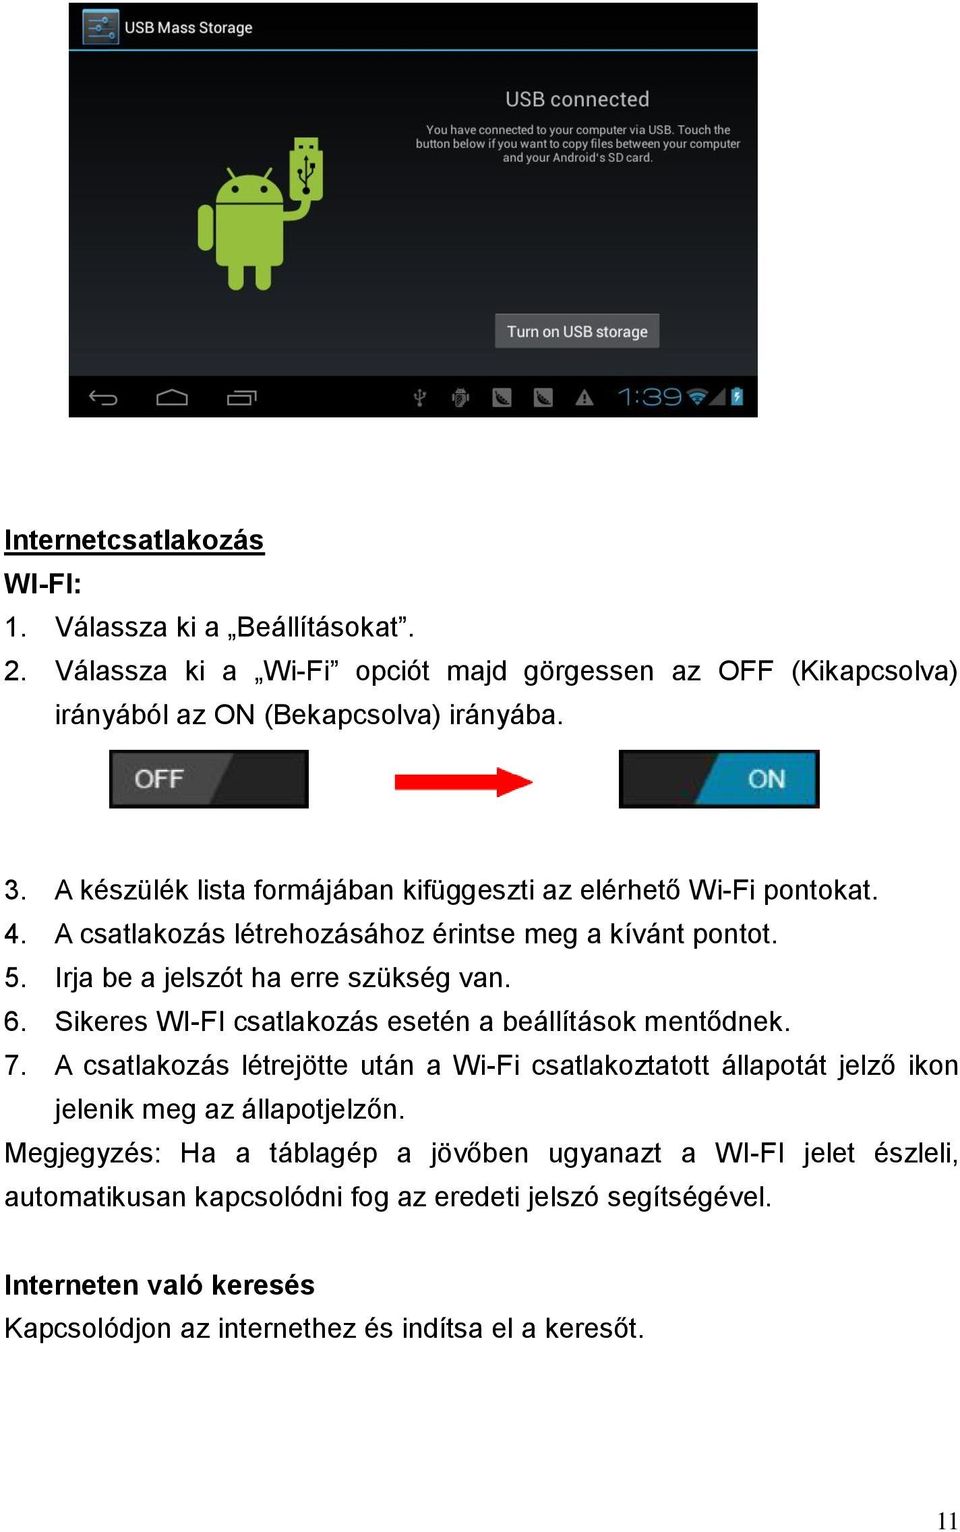 Sikeres WI-FI csatlakozás esetén a beállítások mentődnek. 7. A csatlakozás létrejötte után a Wi-Fi csatlakoztatott állapotát jelző ikon jelenik meg az állapotjelzőn.